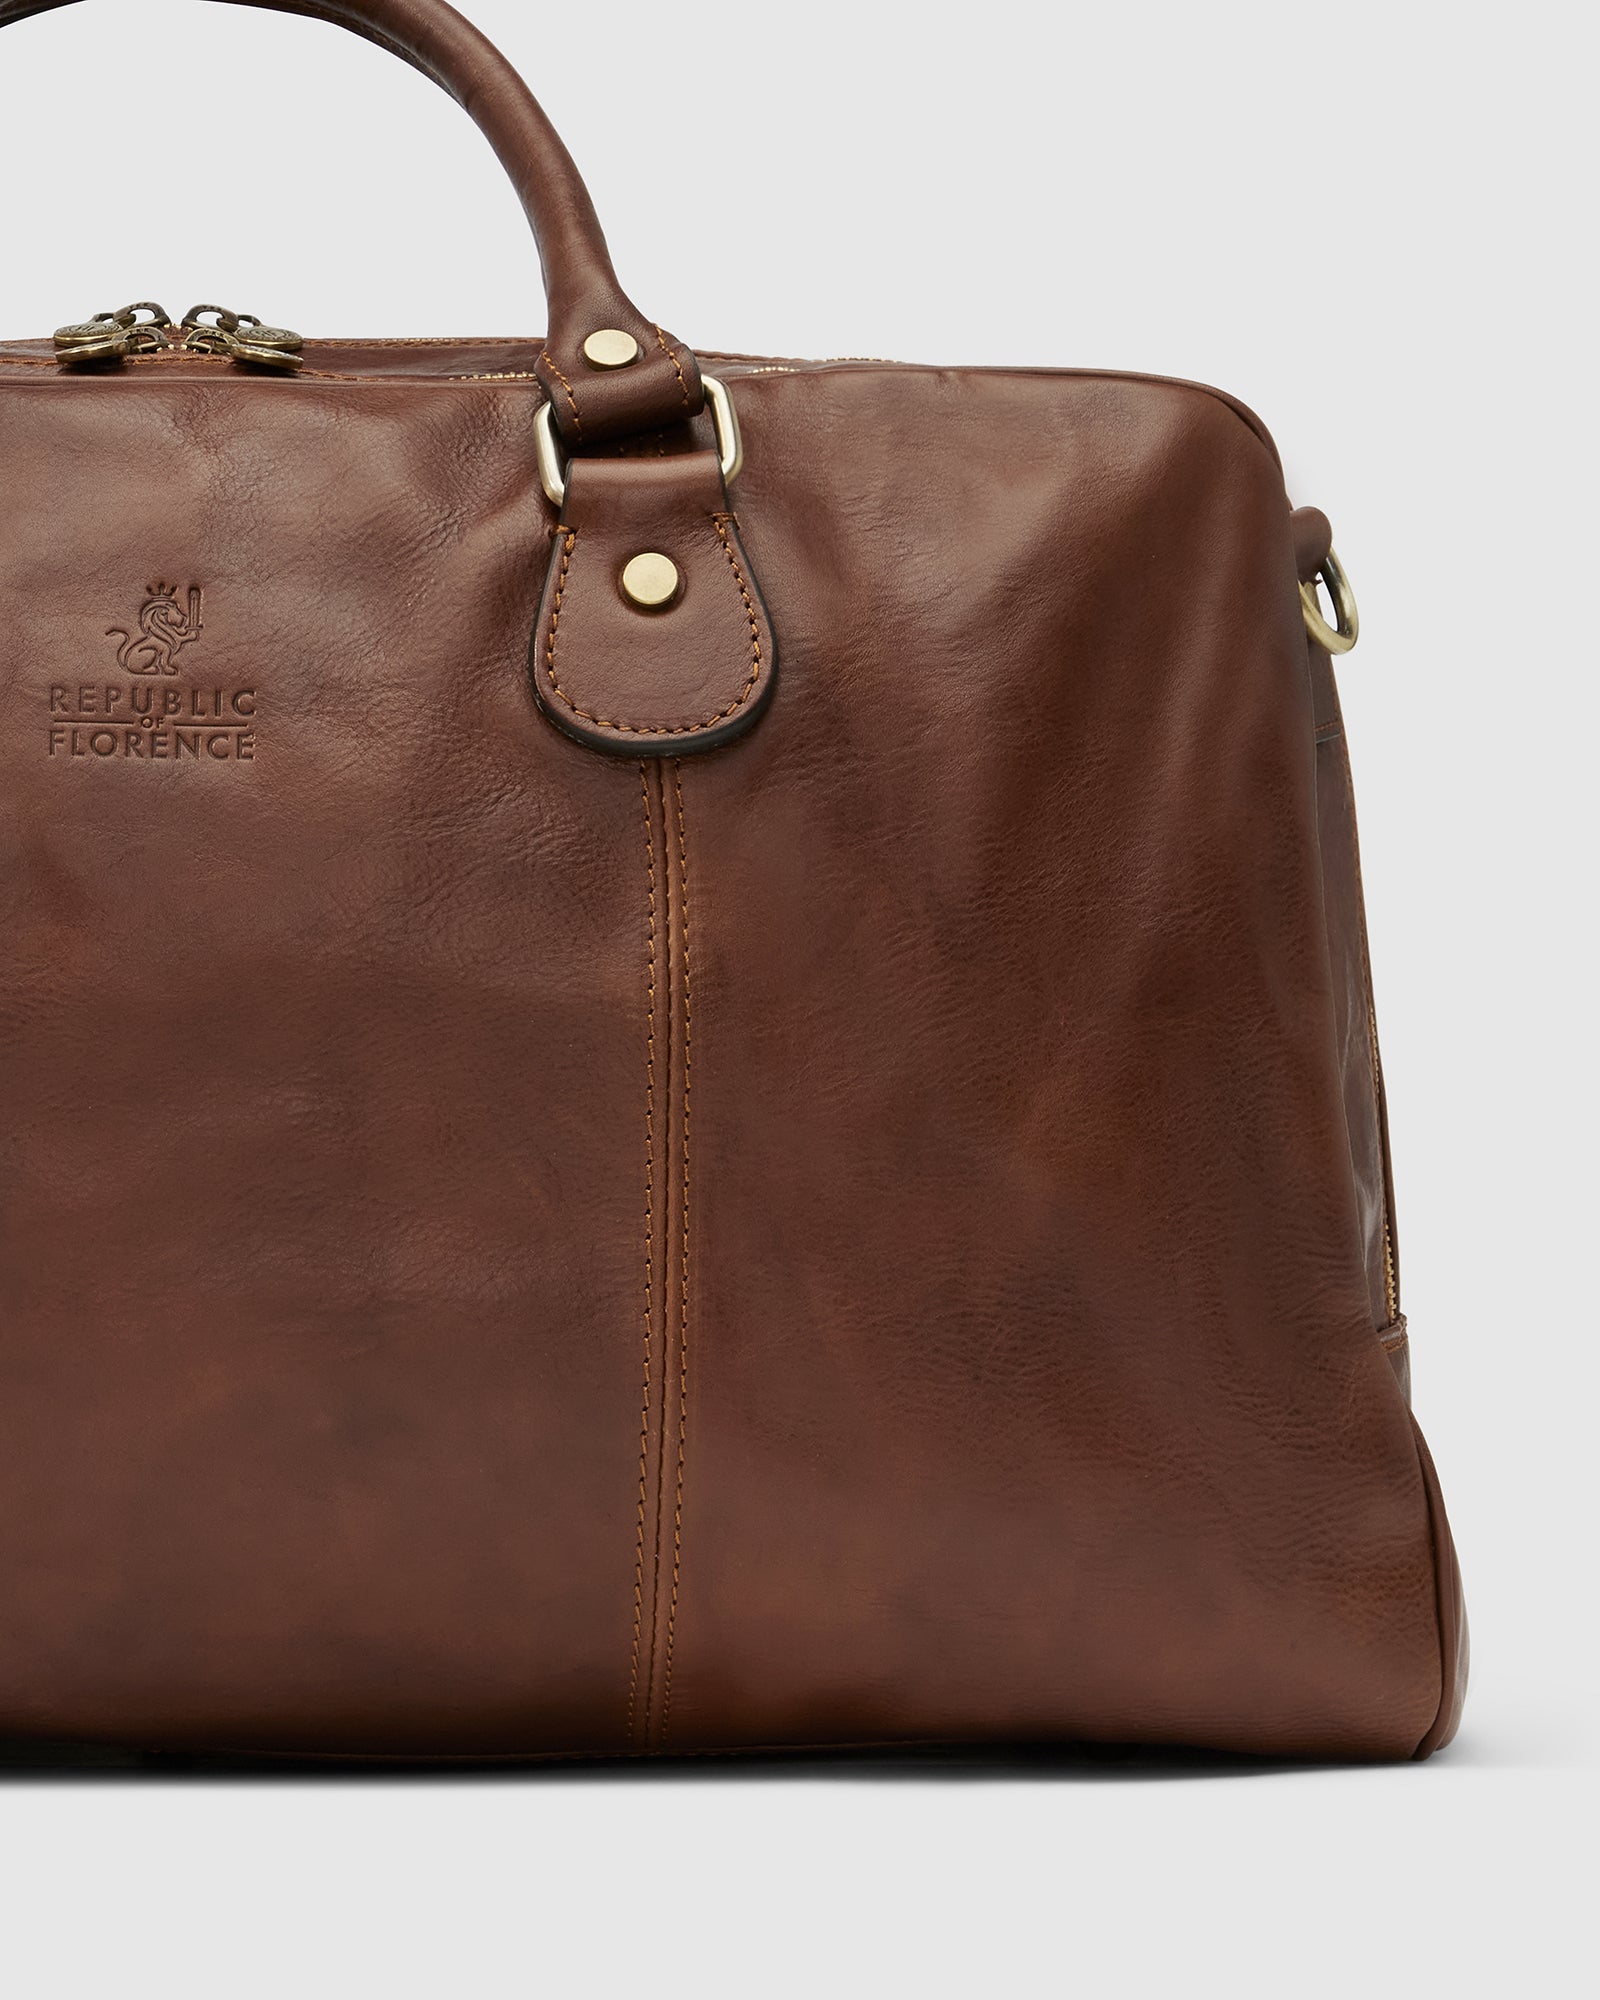 Magellan Matt Brown - Leather Duffle Bag